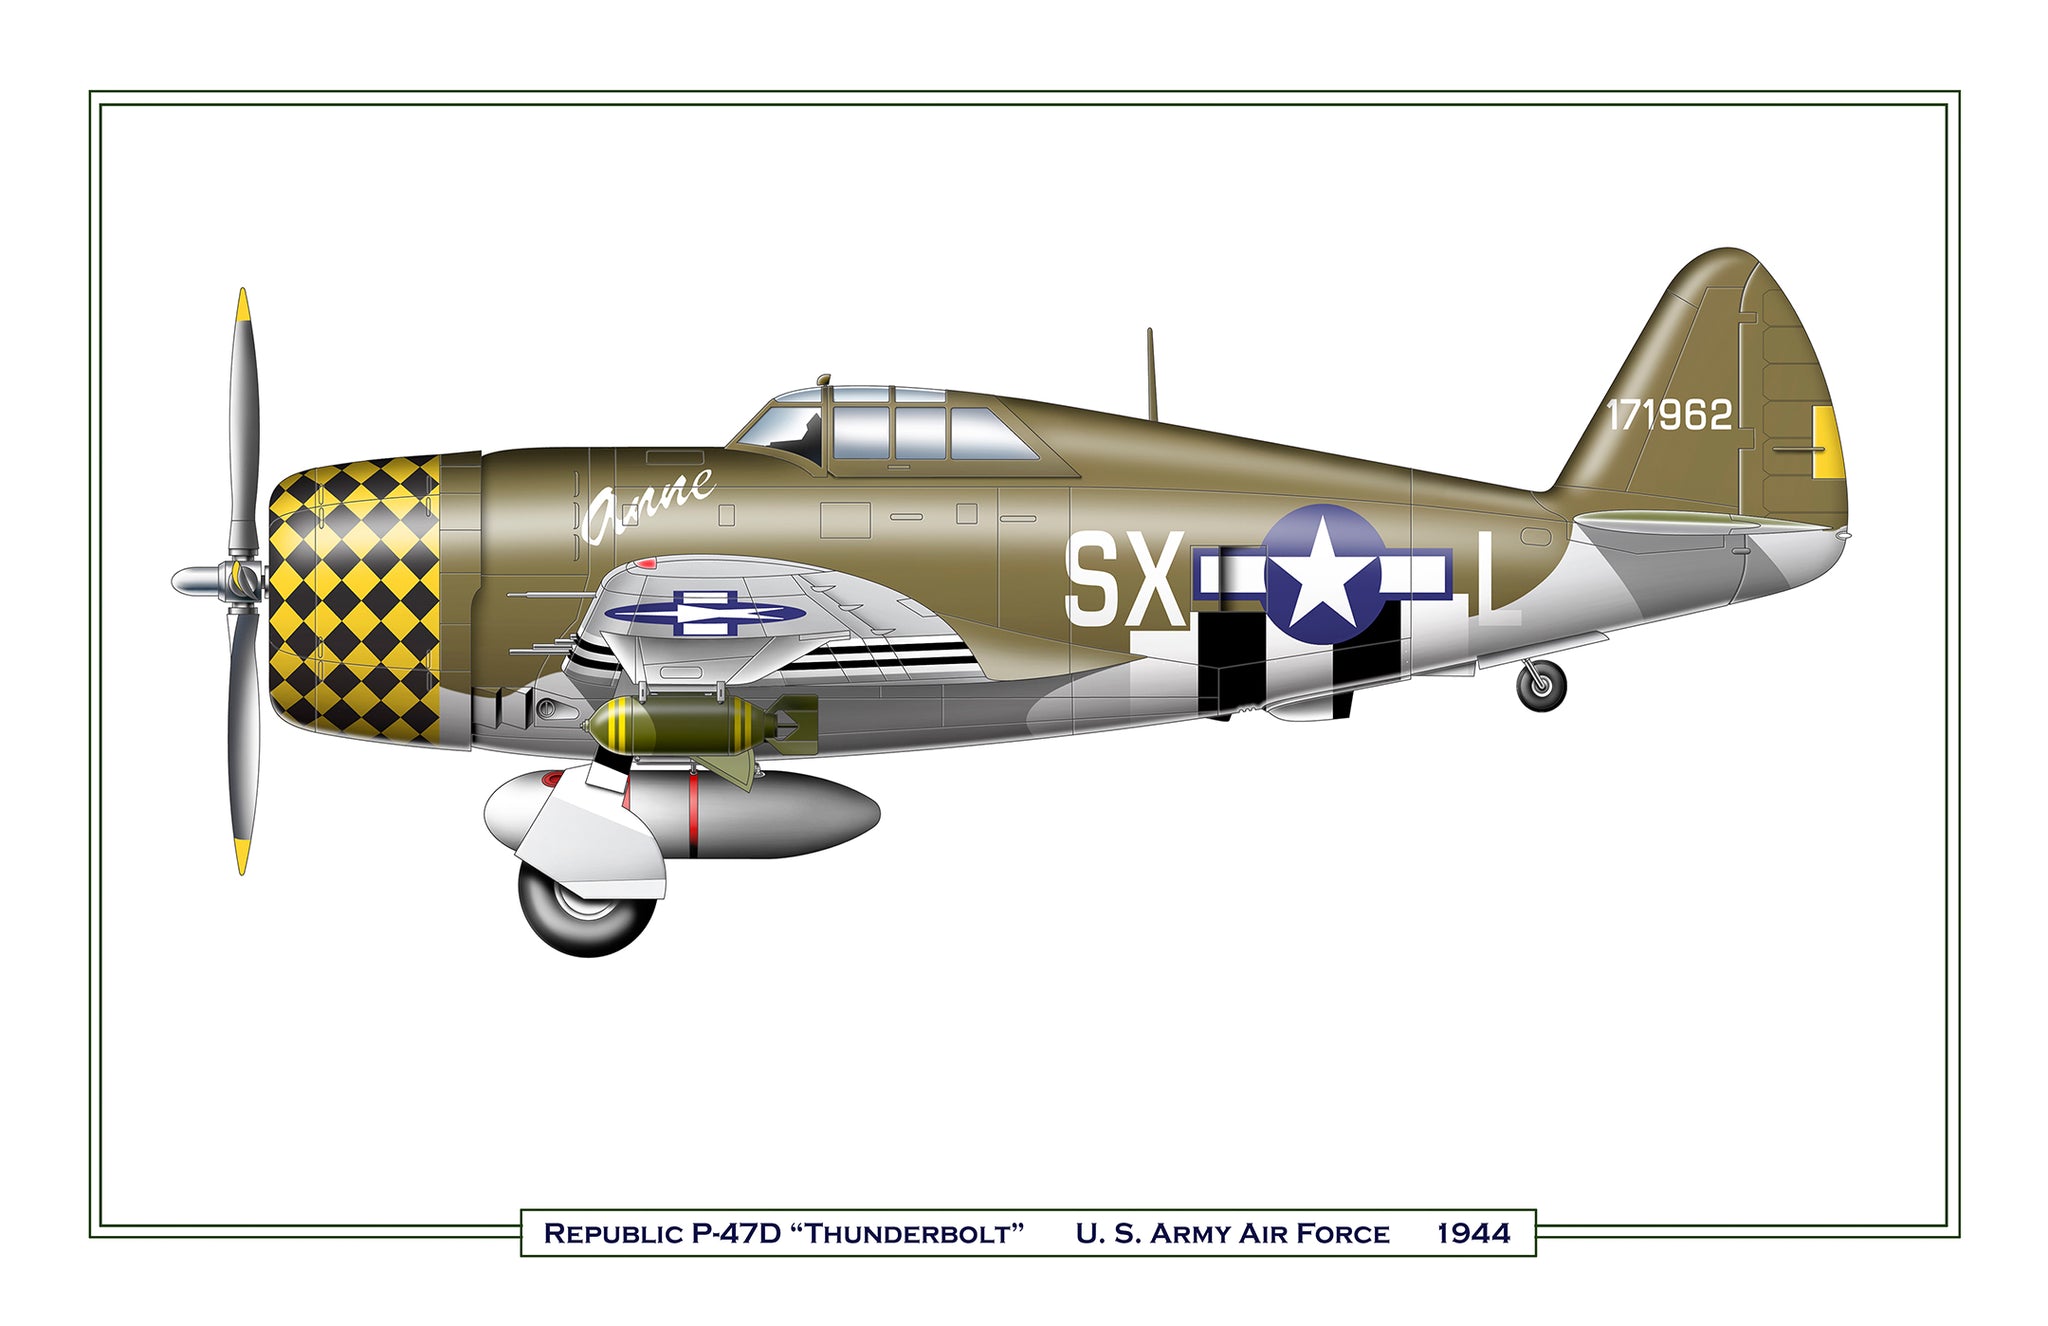 Republic P-47D “Thunderbolt”